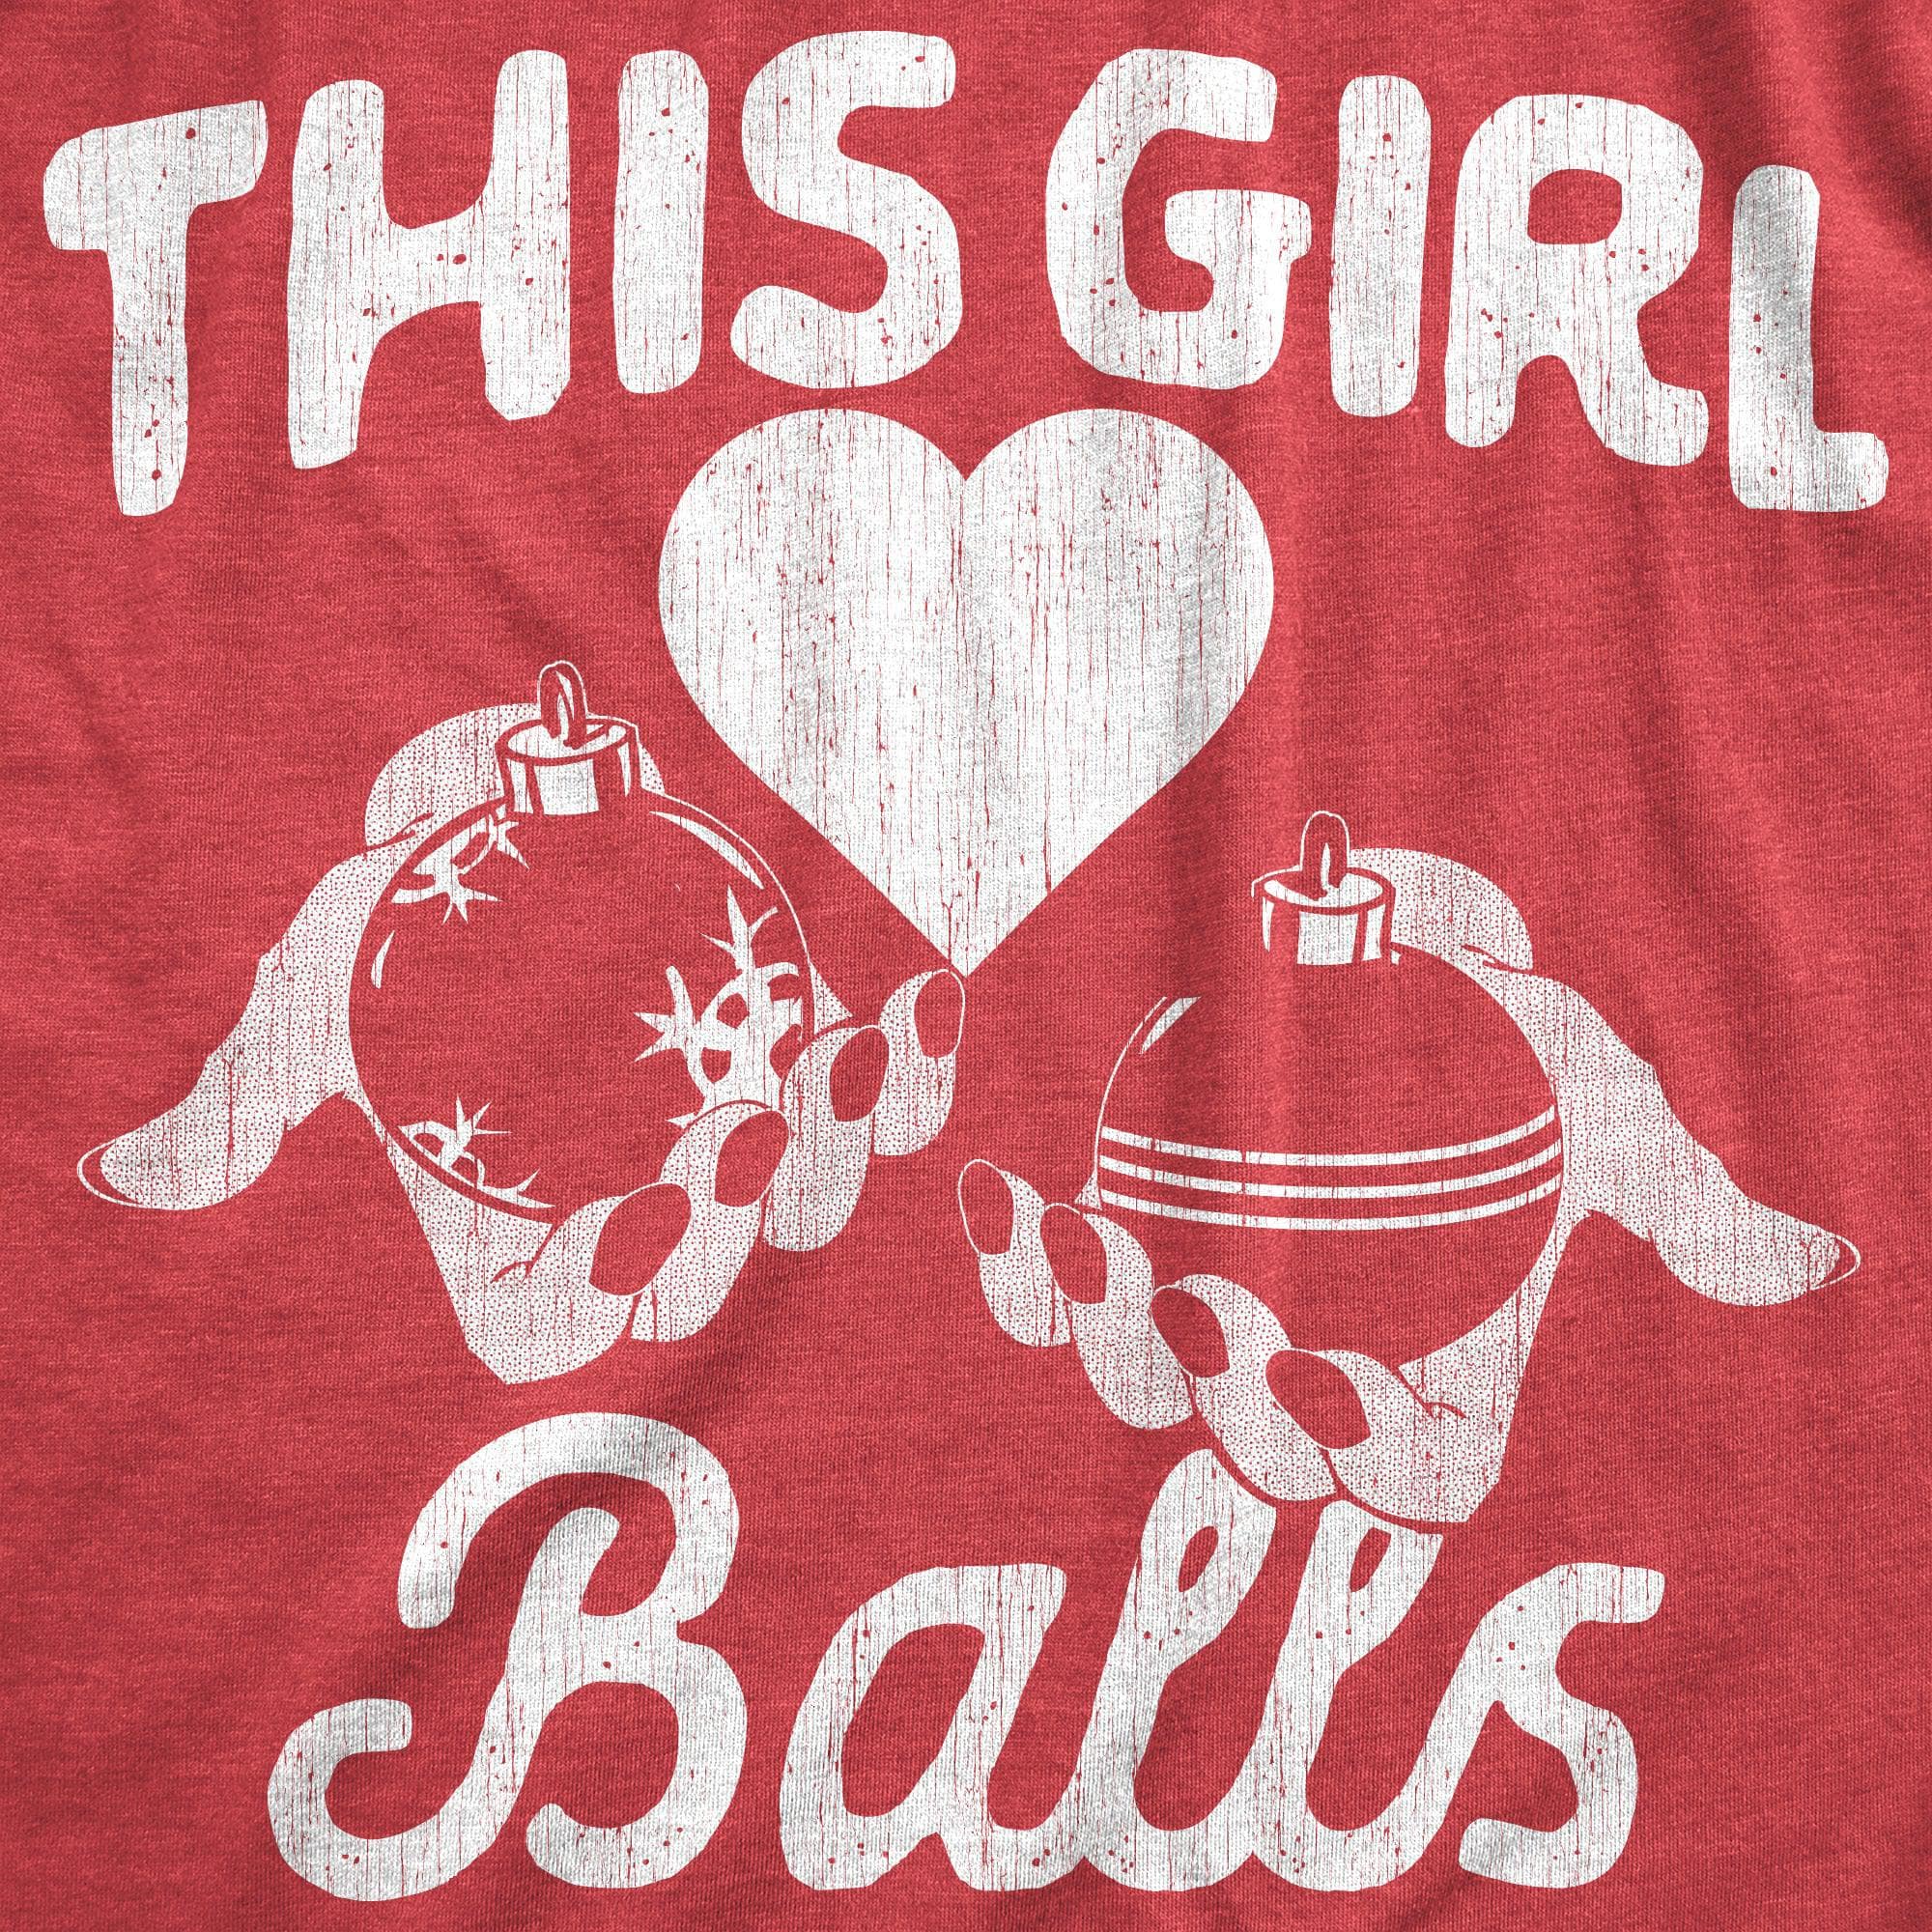 This Girl Balls Women's Tshirt  -  Crazy Dog T-Shirts